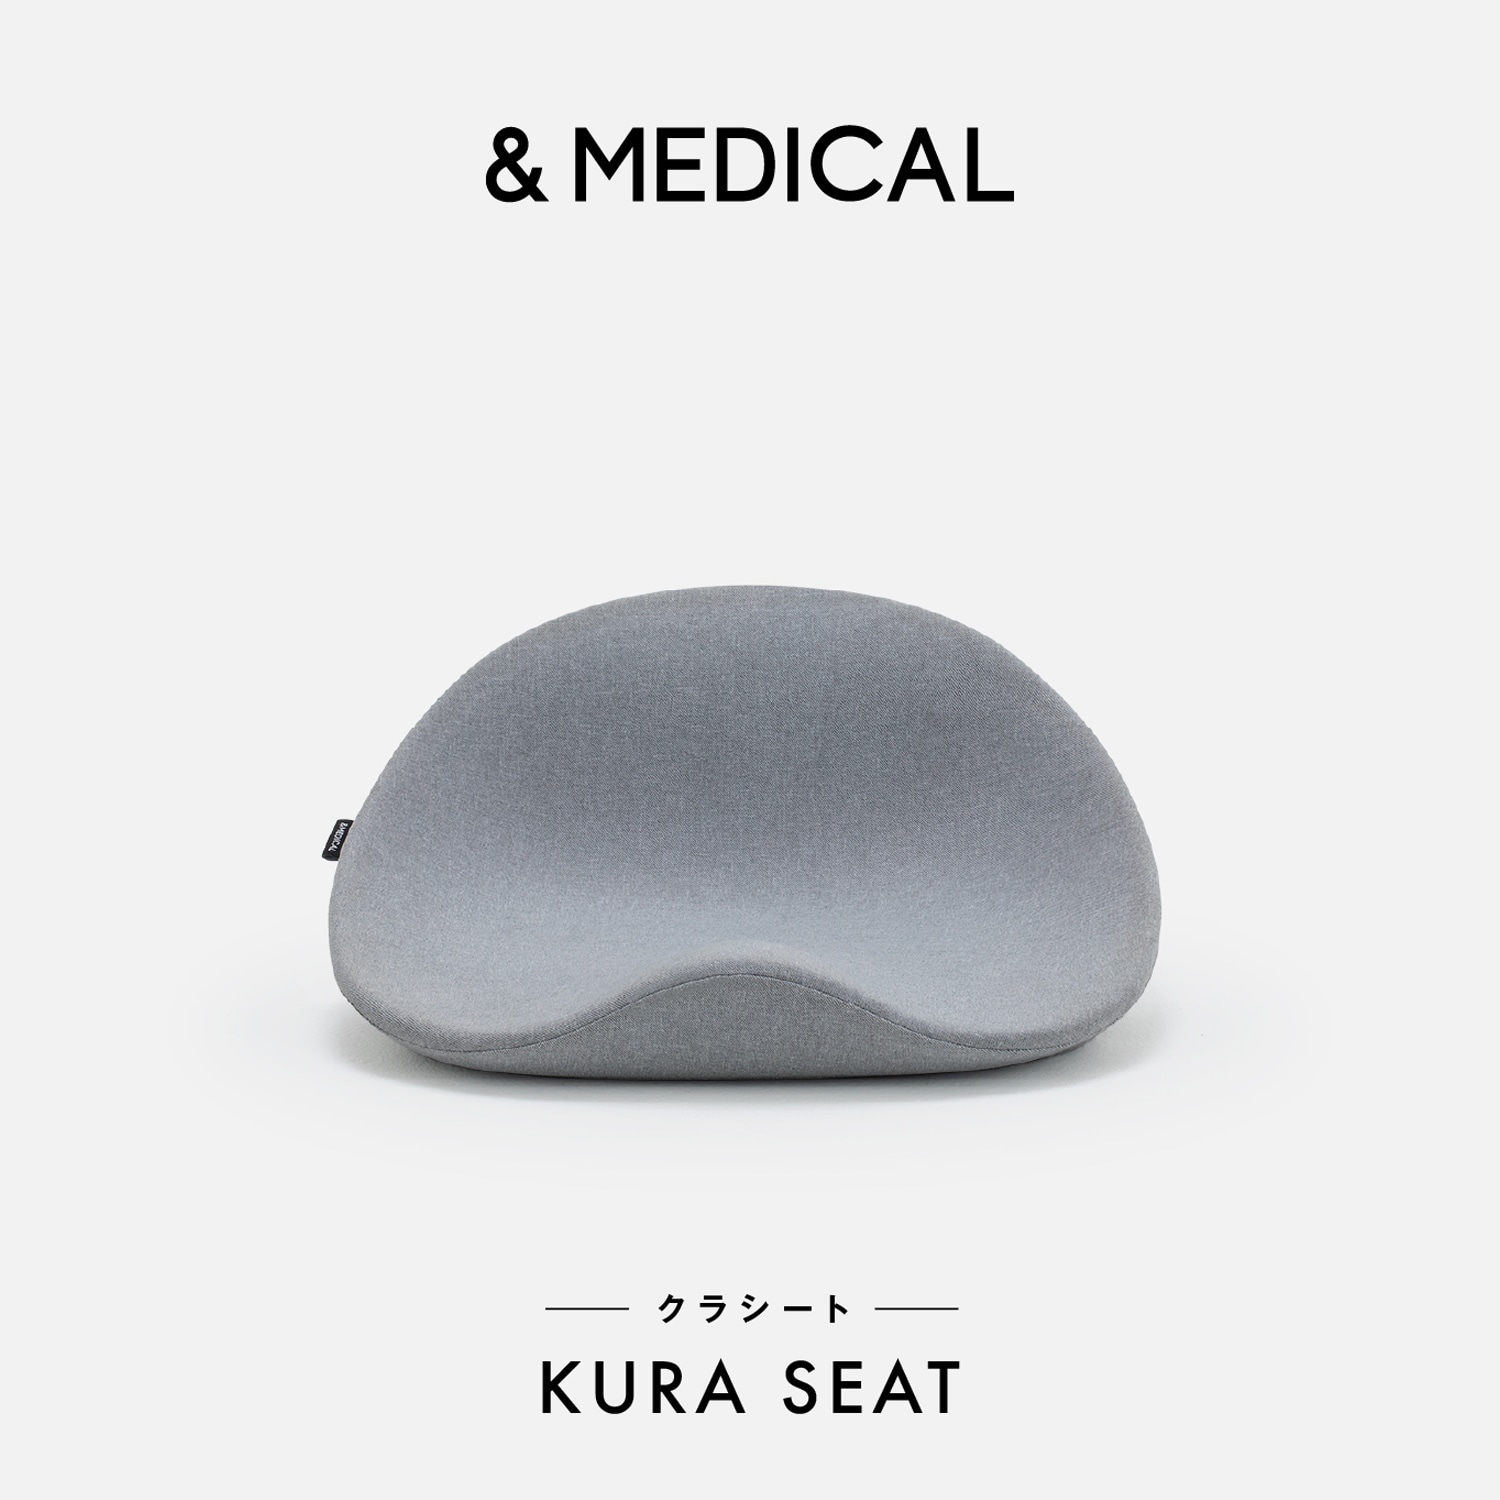 サポートシート「KURA SEAT」【スタンダード】(アンドメディカル ...